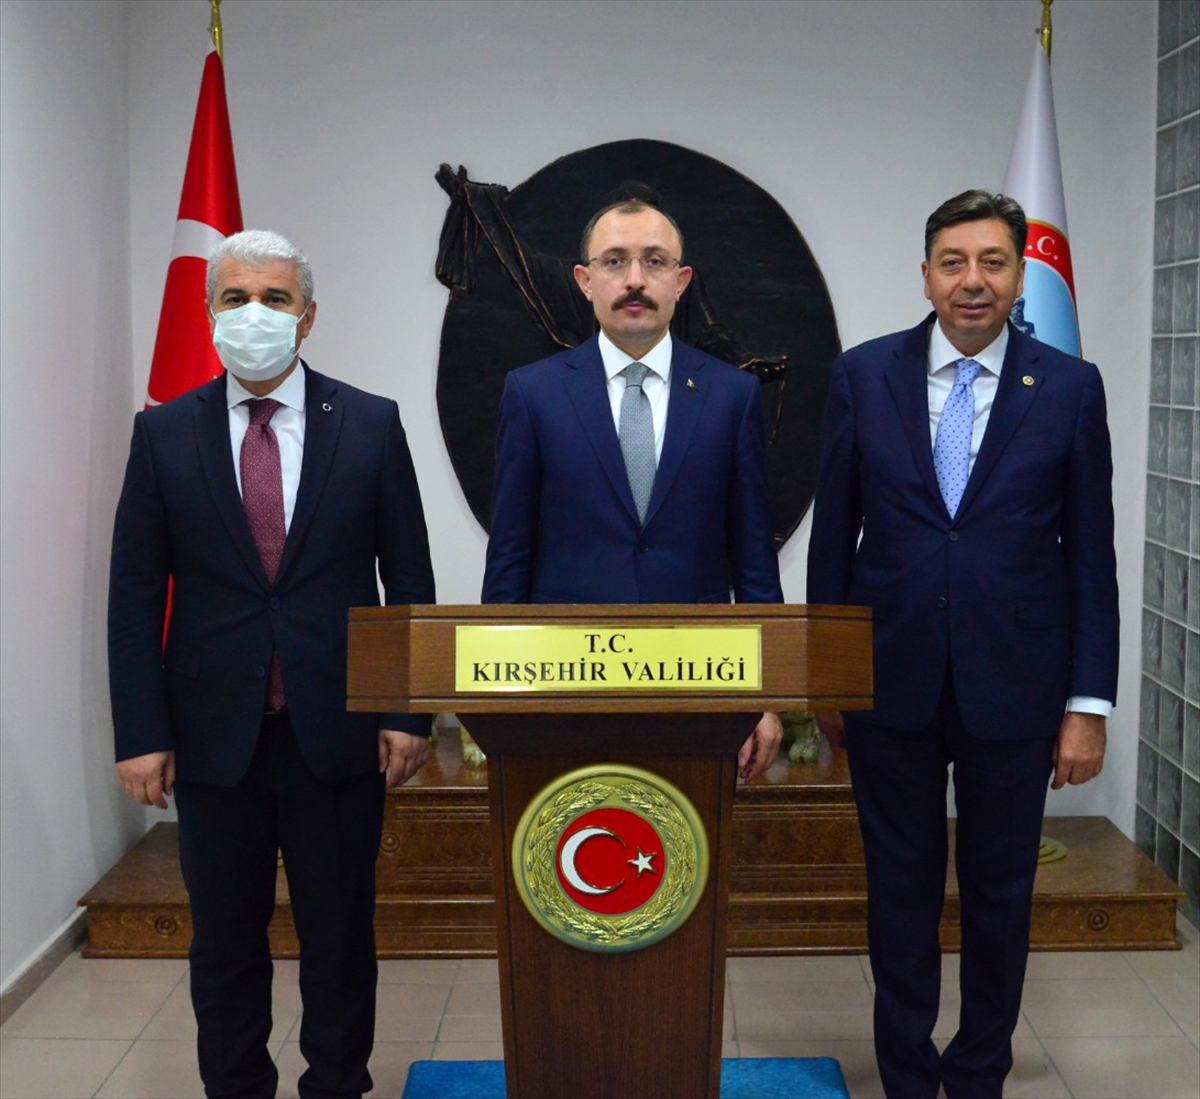 Ticaret Bakanı Mehmet Muş, Kırşehir Valiliğini ziyaret etti